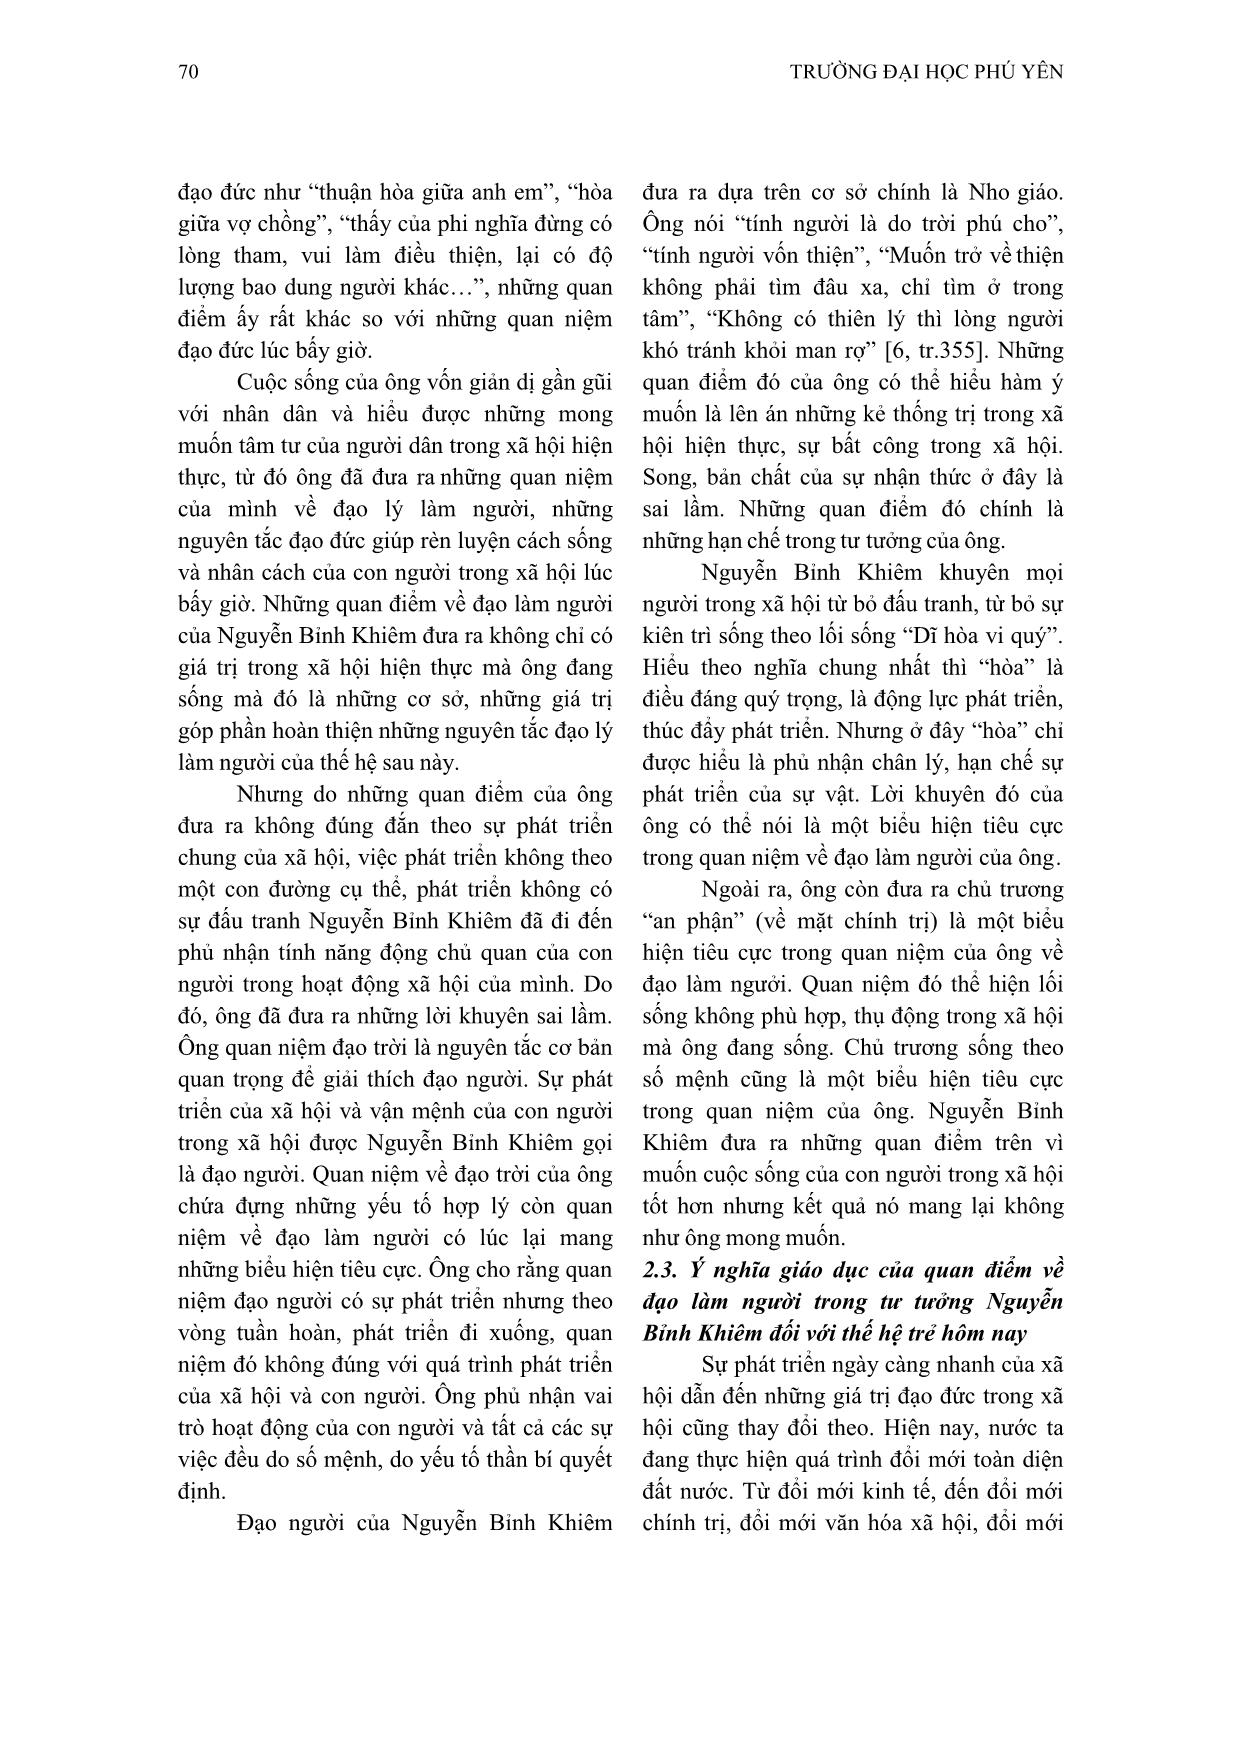 Nội dung và ý nghĩa quan điểm về đạo làm người của Nguyễn Bỉnh Khiêm trang 5